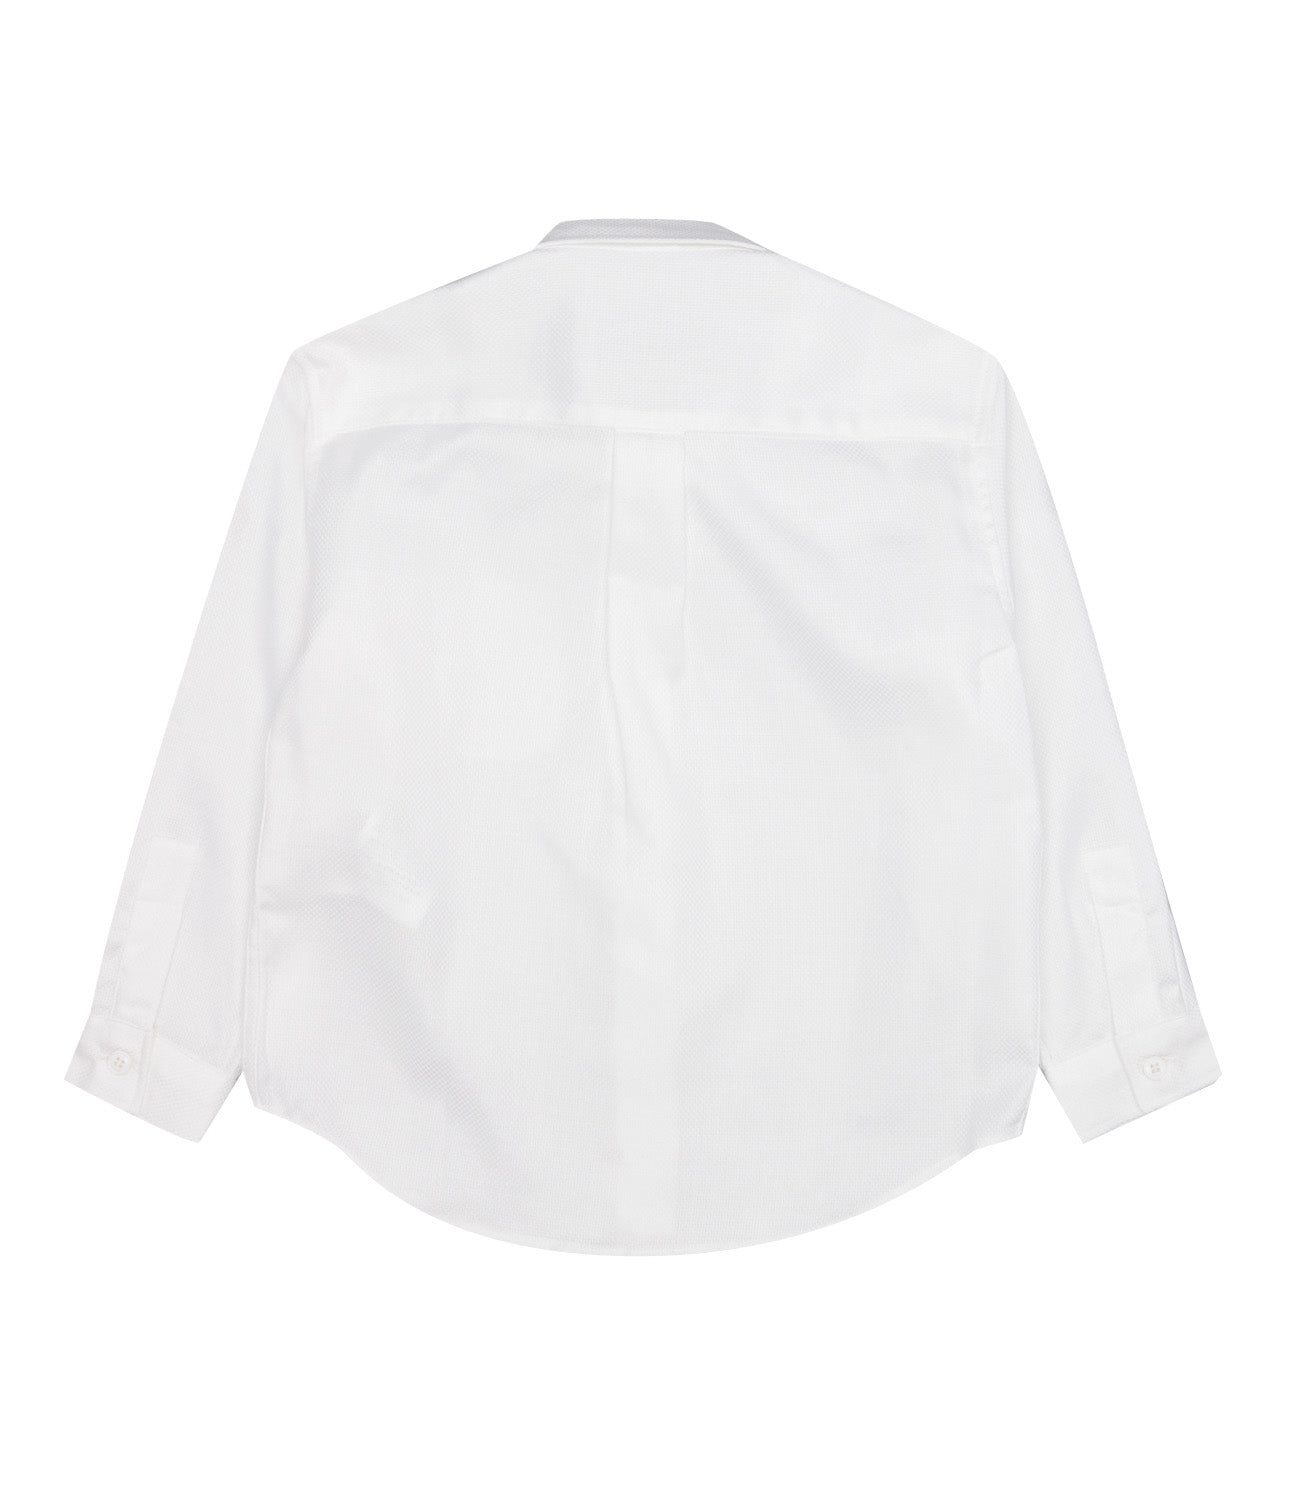 Dondup Junior | White Shirt